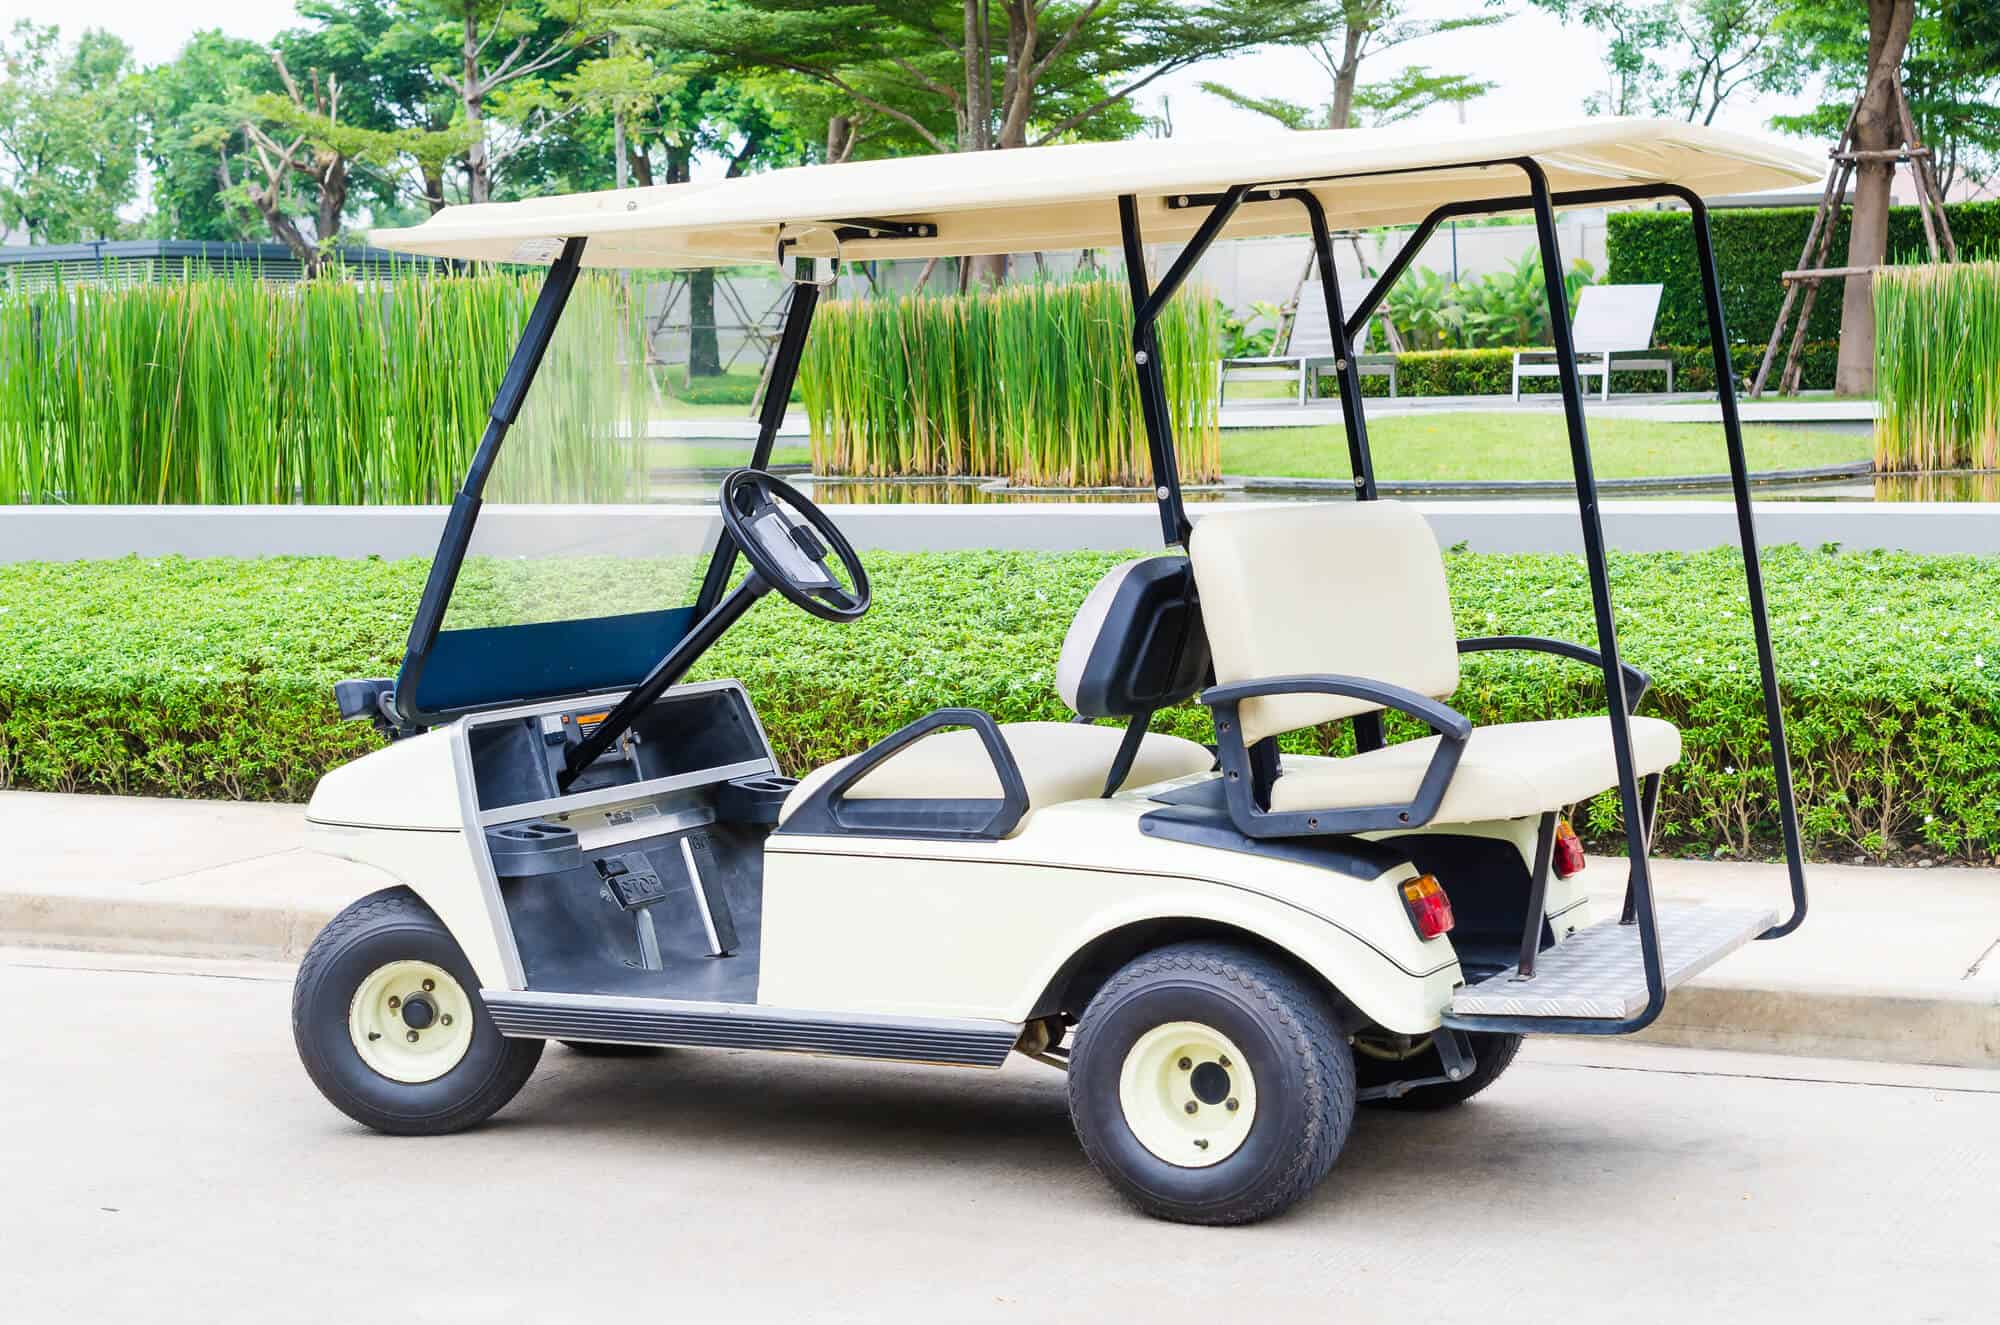 How To Wire 12 Volt Lights To A 36 Volt Golf Cart 